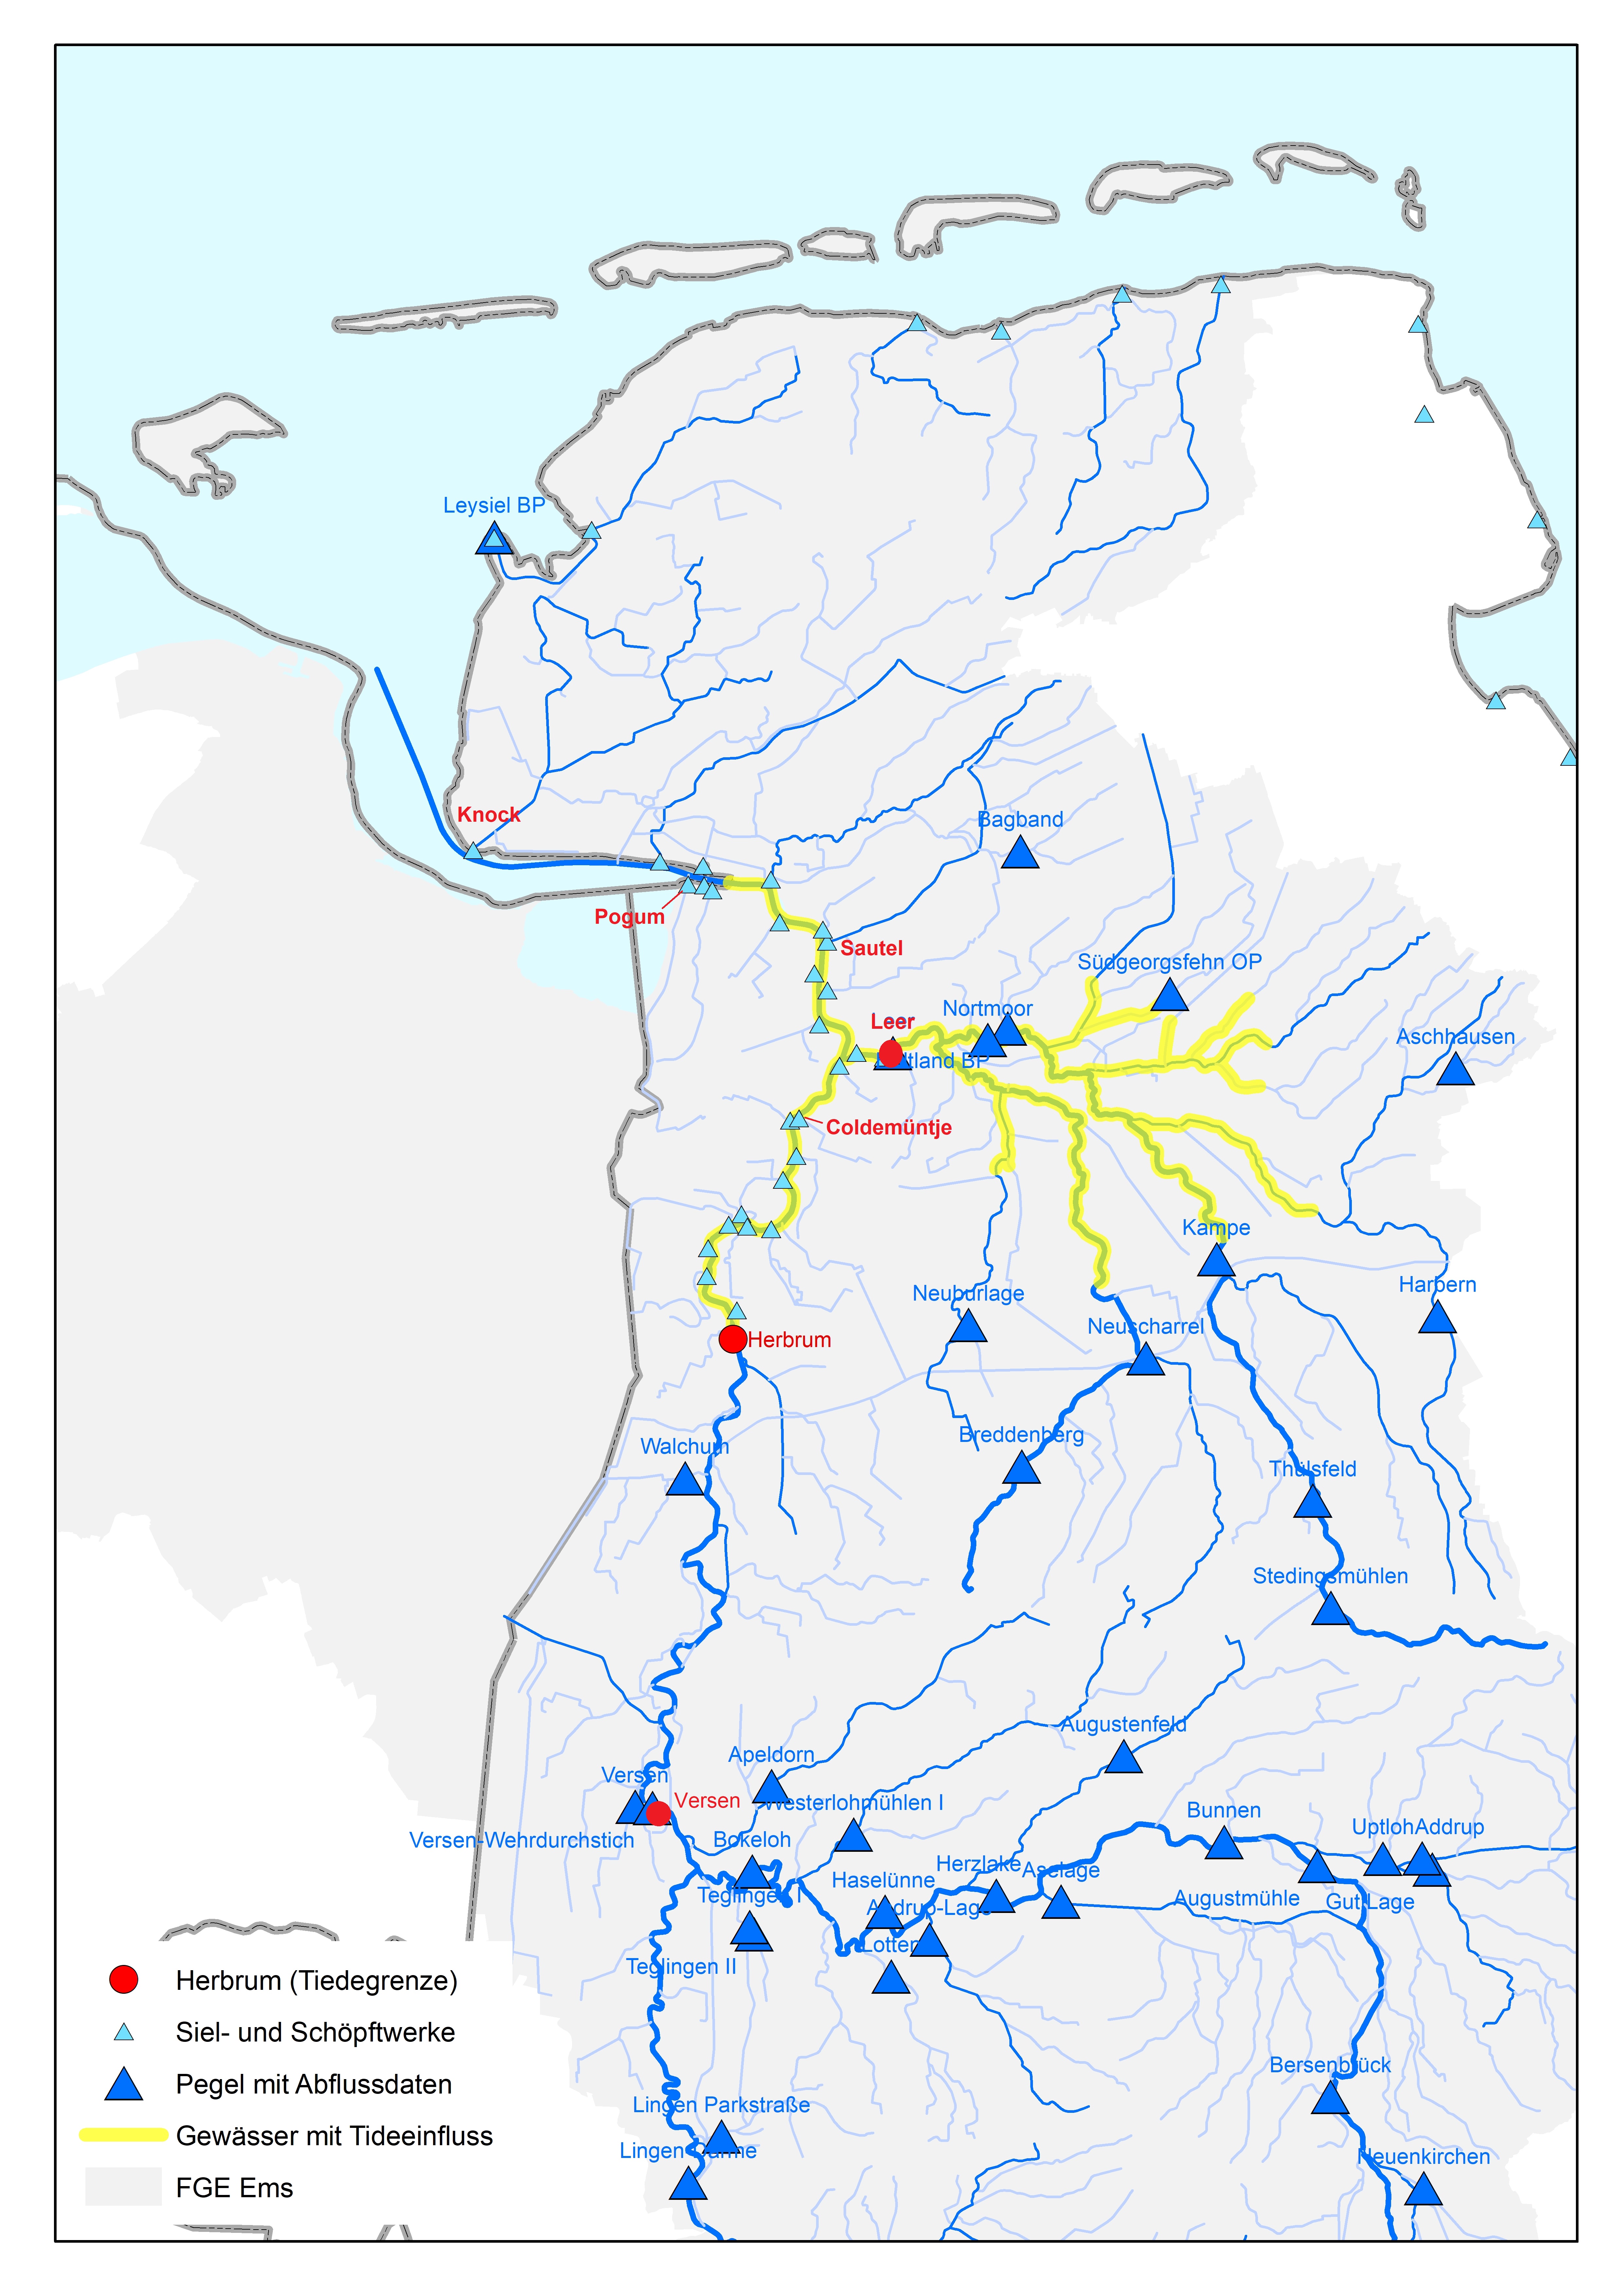 Overzichtskaart van hydrologische meetstations in het stroomgebied van de Eems en West-Duitse Waddenzee.